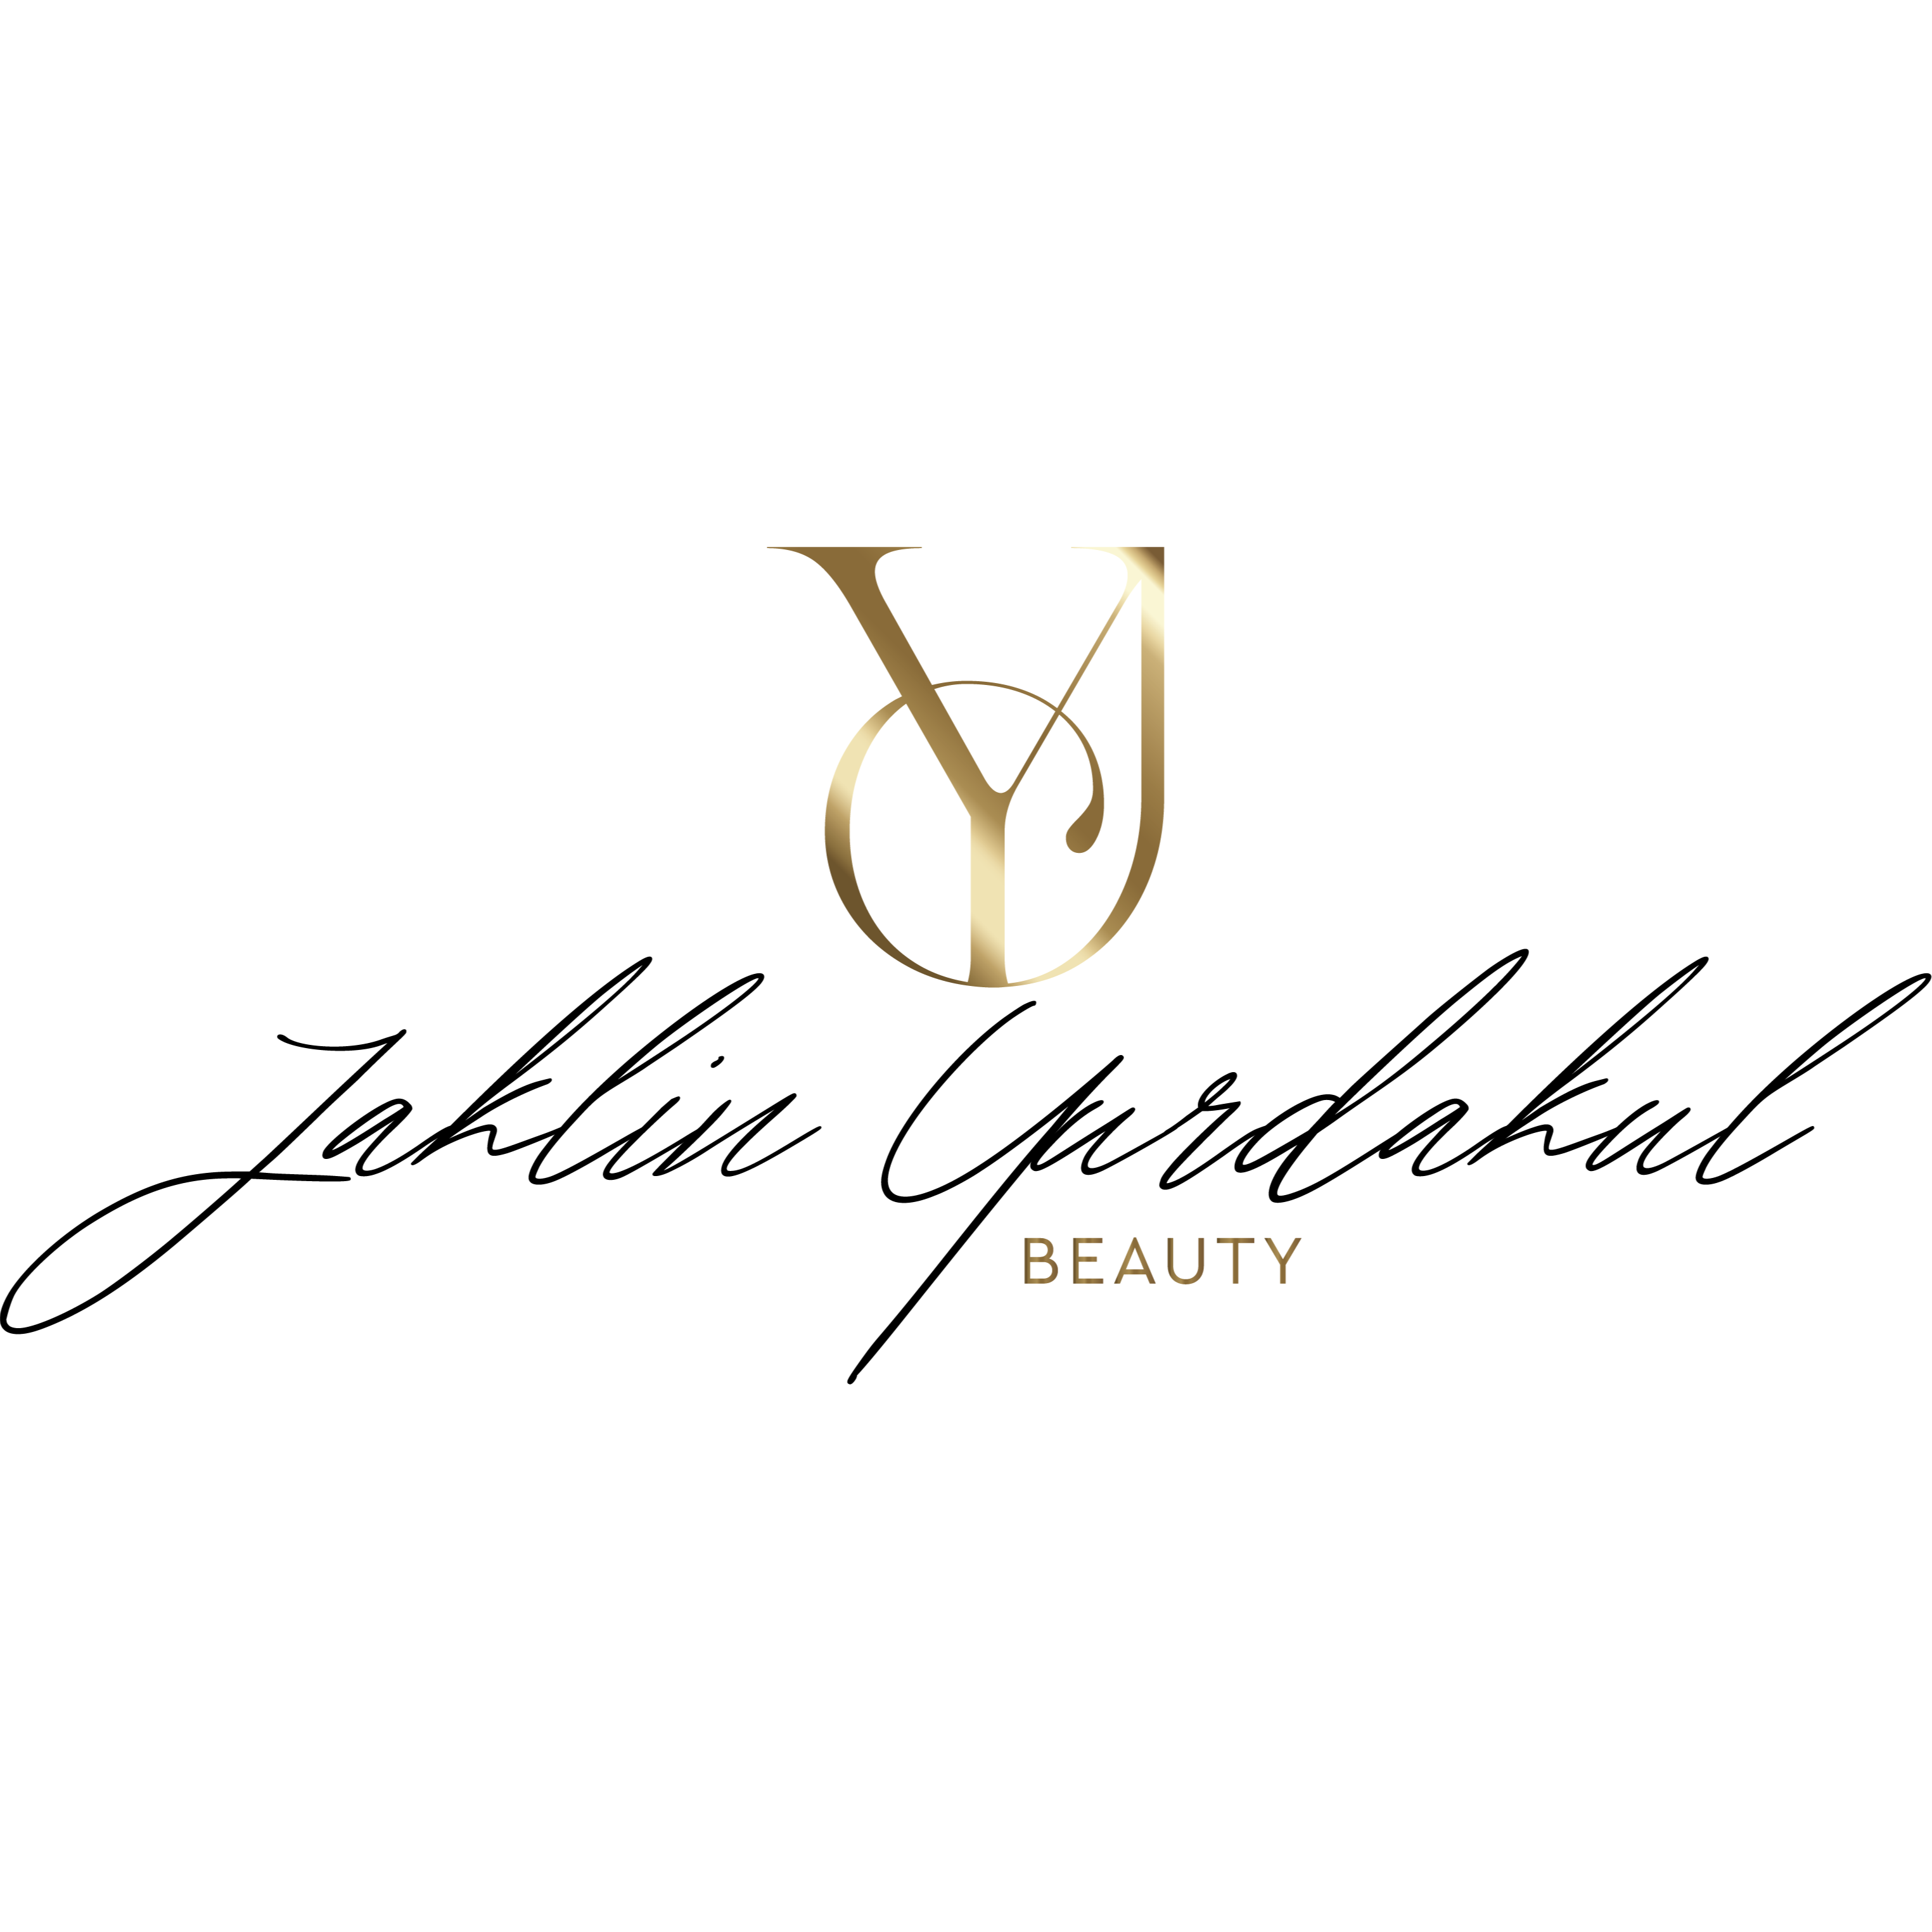 Jaklin Yurdakul Beauty Logo